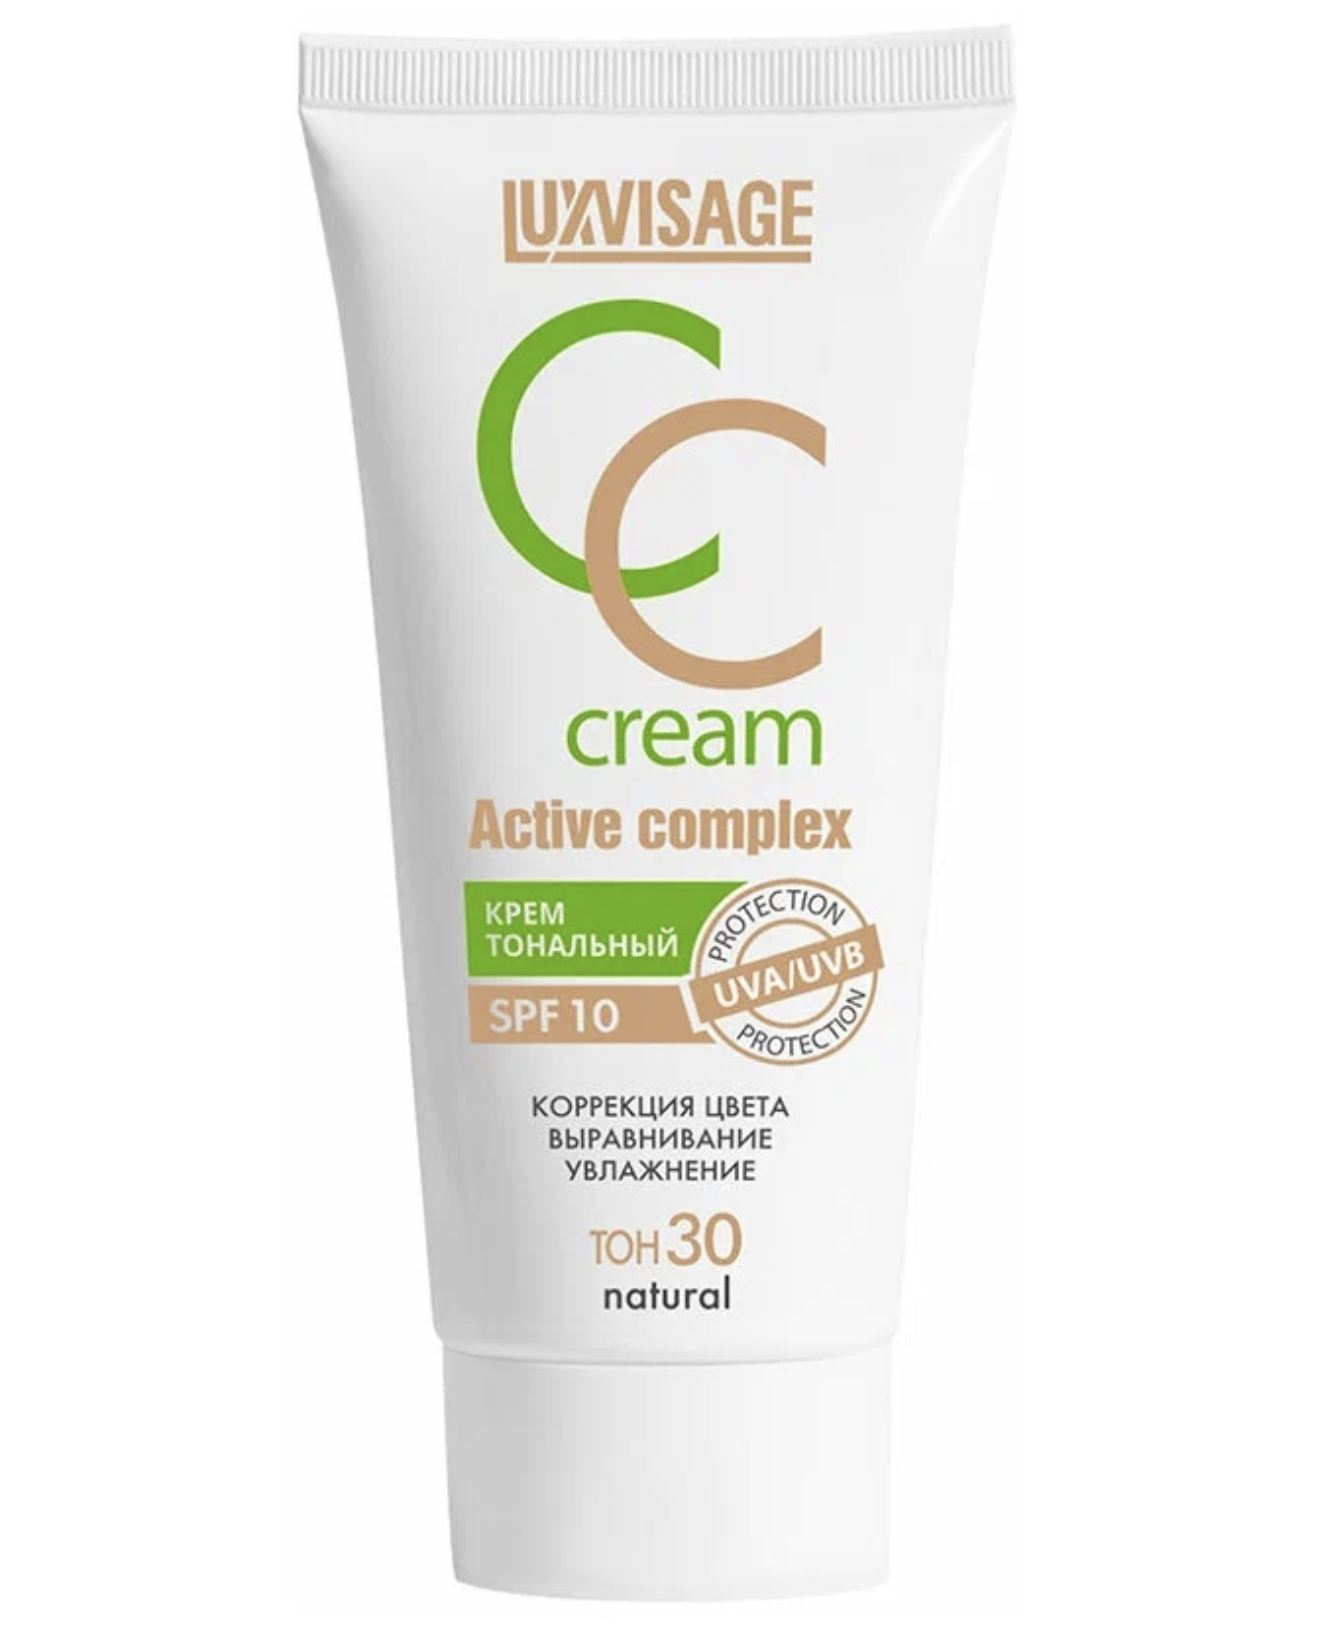   / LuxVisage -   CC Cream Active Complex  30 Natural 35 